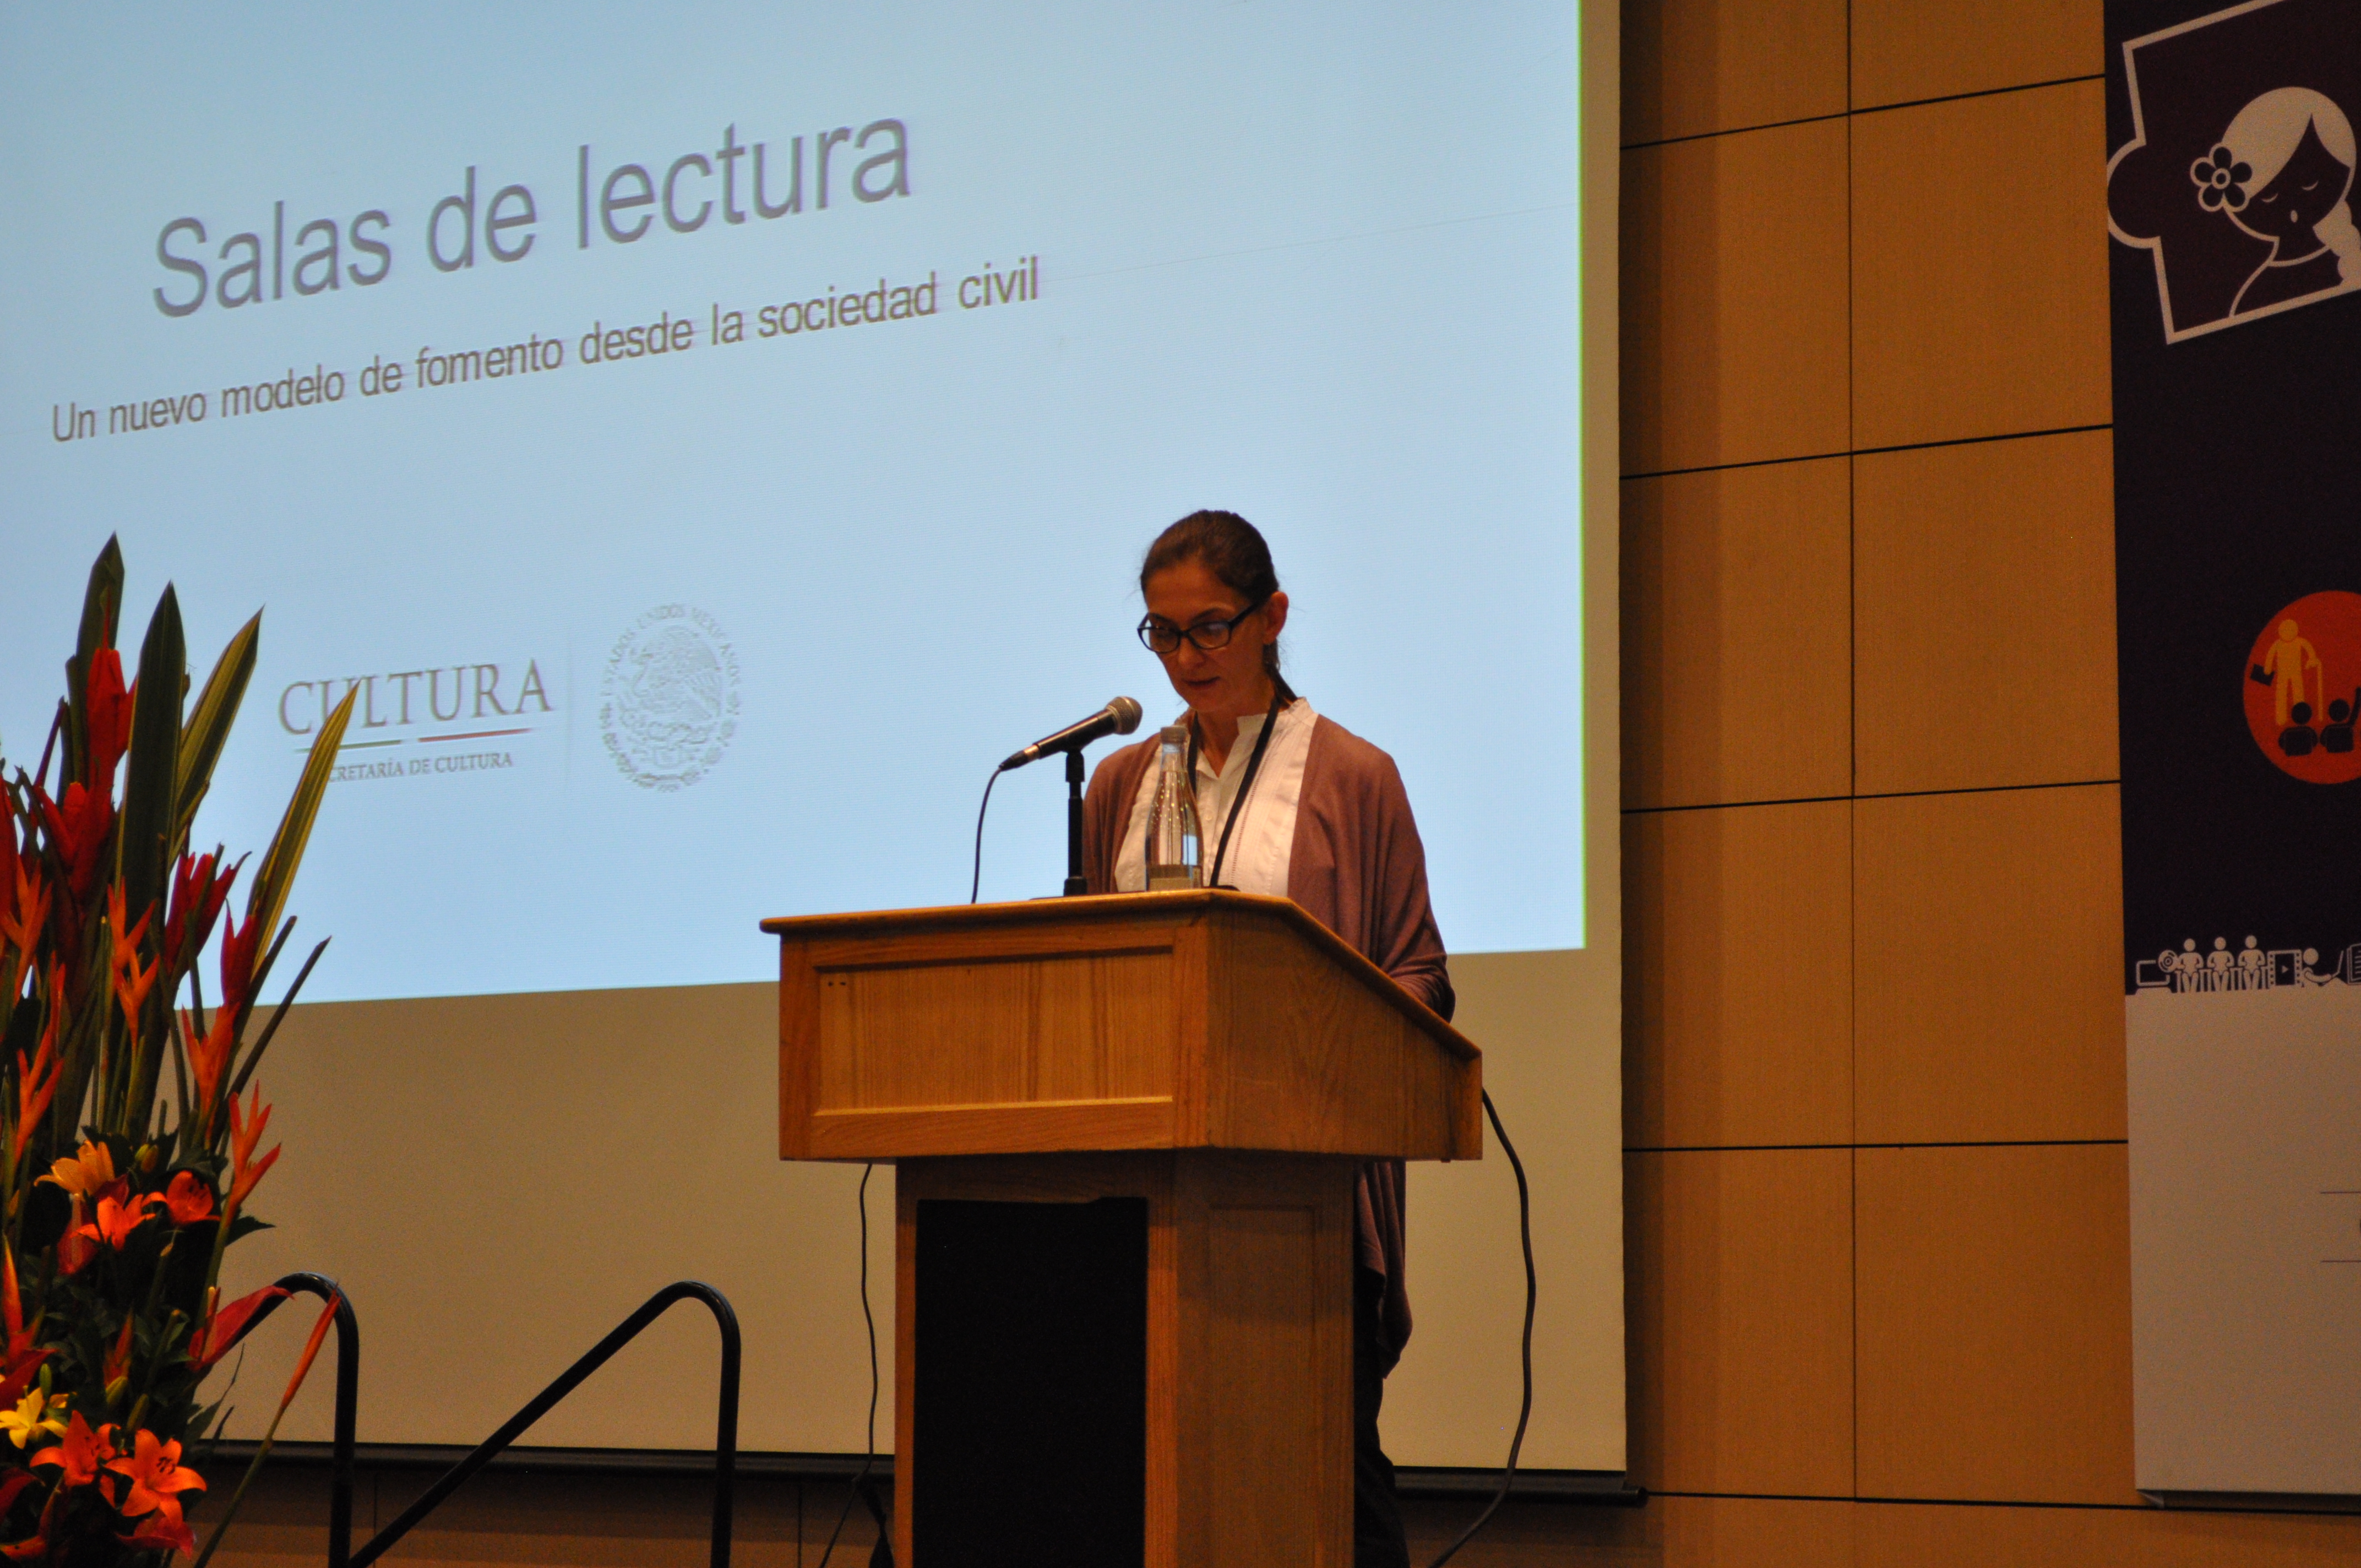 Conferencia Magistral: “Salas de lectura: un nuevo modelo de fomento desde la sociedad civil” por Marina Núñez Bespalova (México)